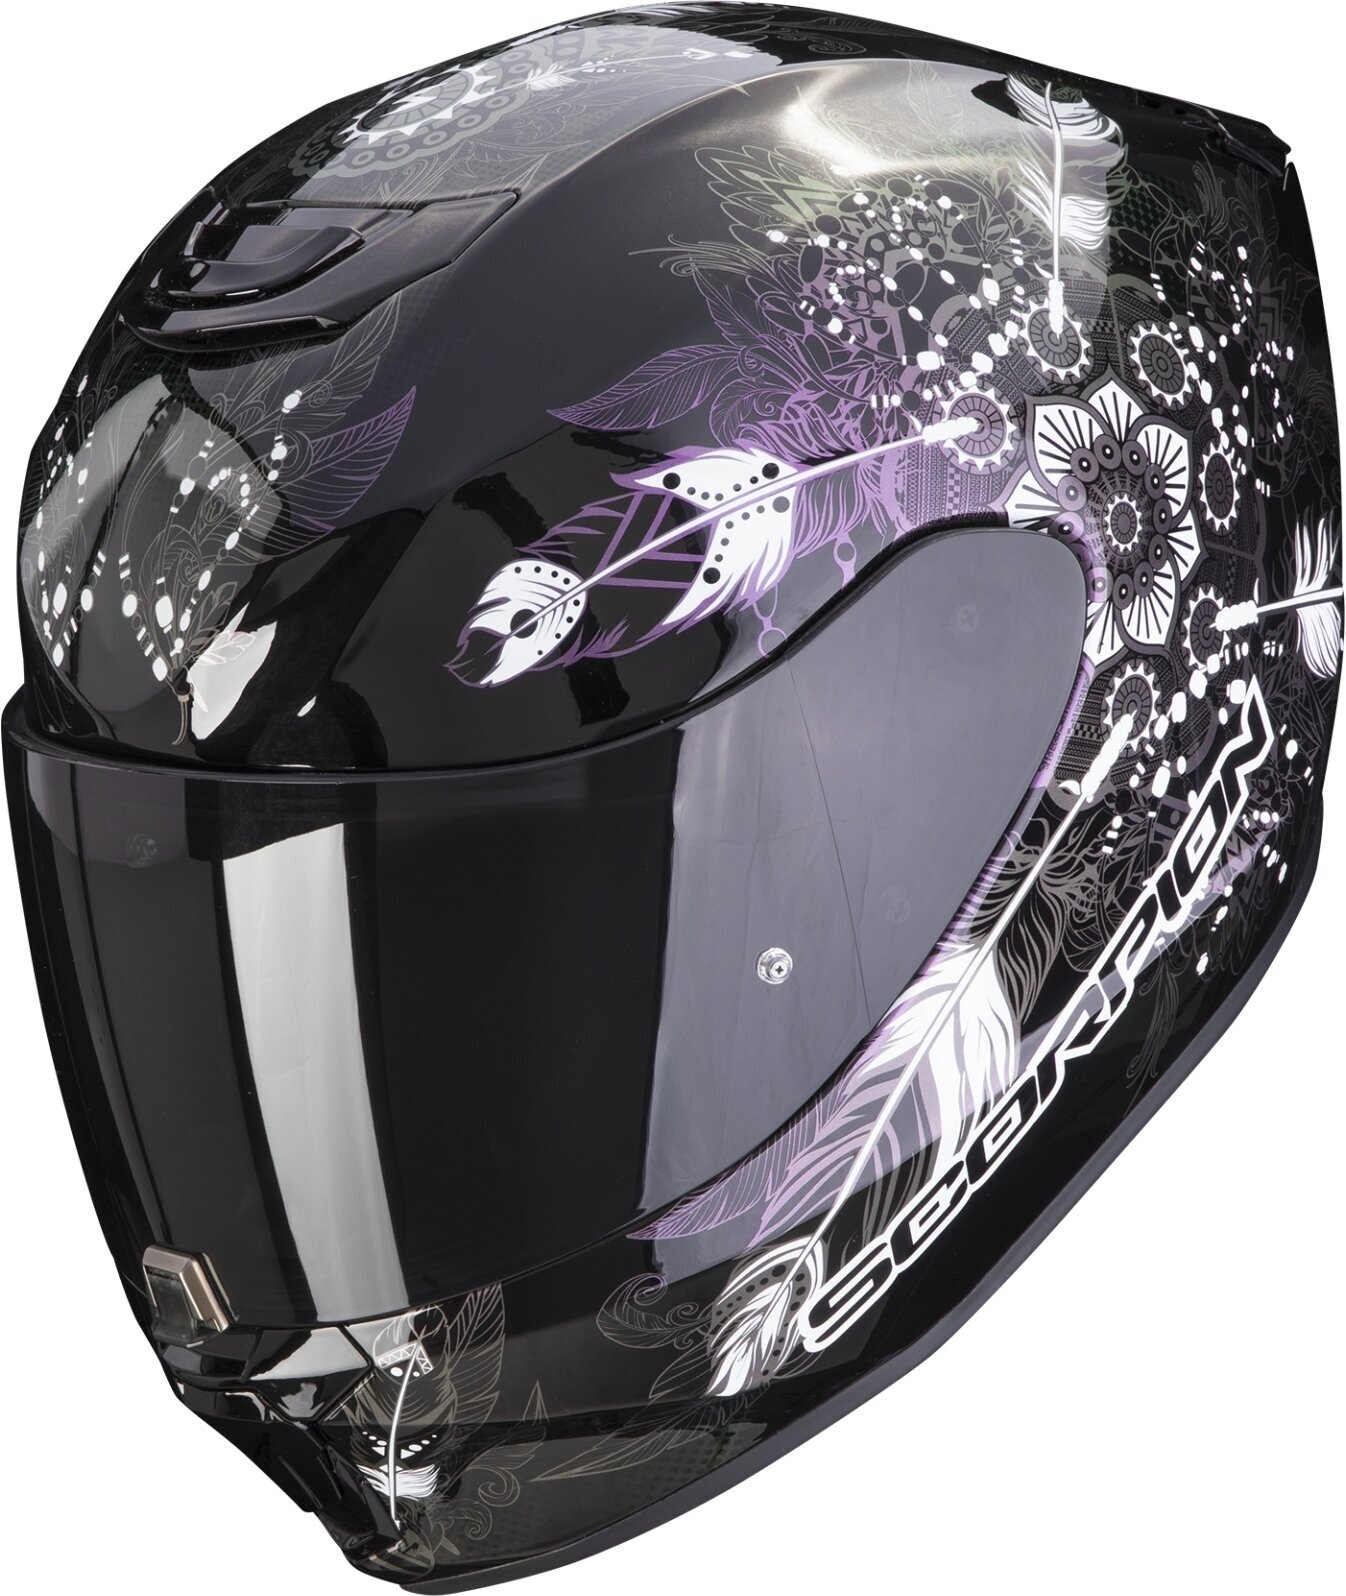 Helmet Scorpion EXO 391 DREAM Black/Chameleon XS Helmet